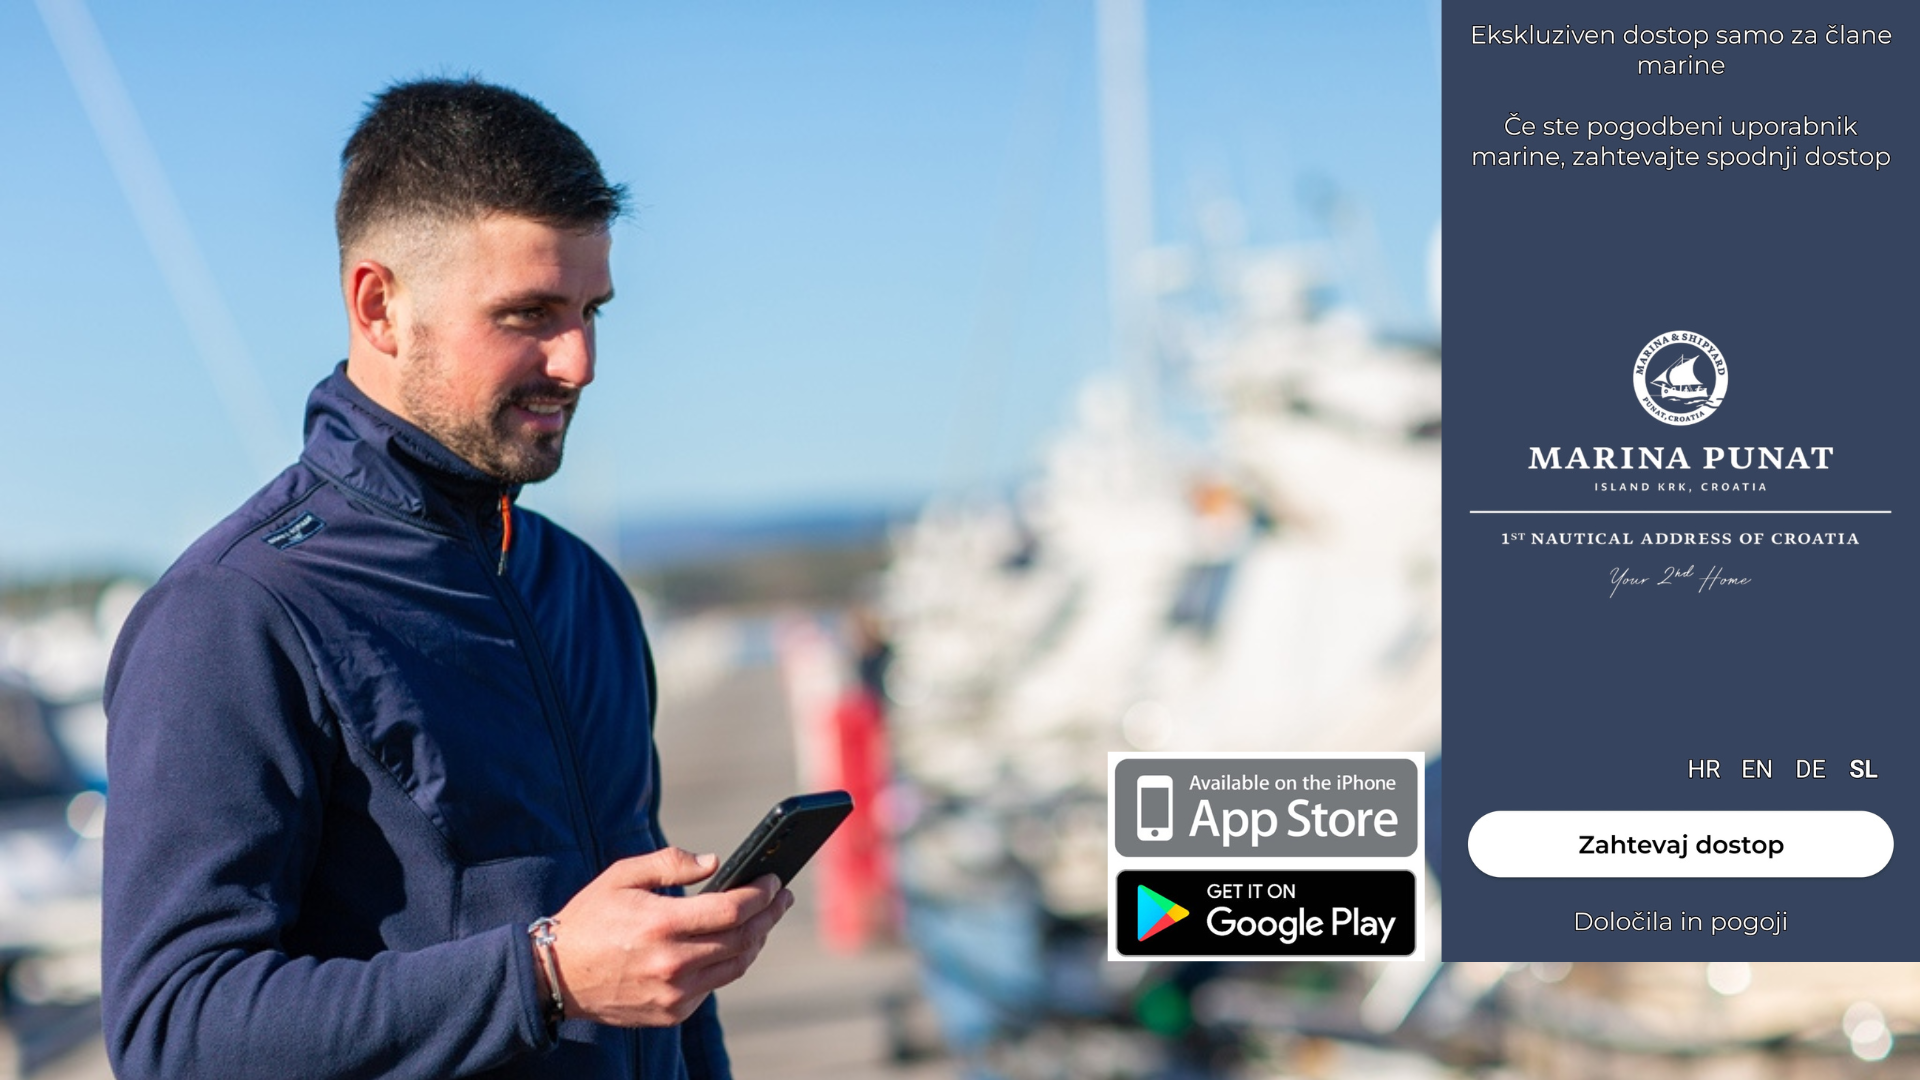 Aplikacija Marine Punat brezplačna za rezidente